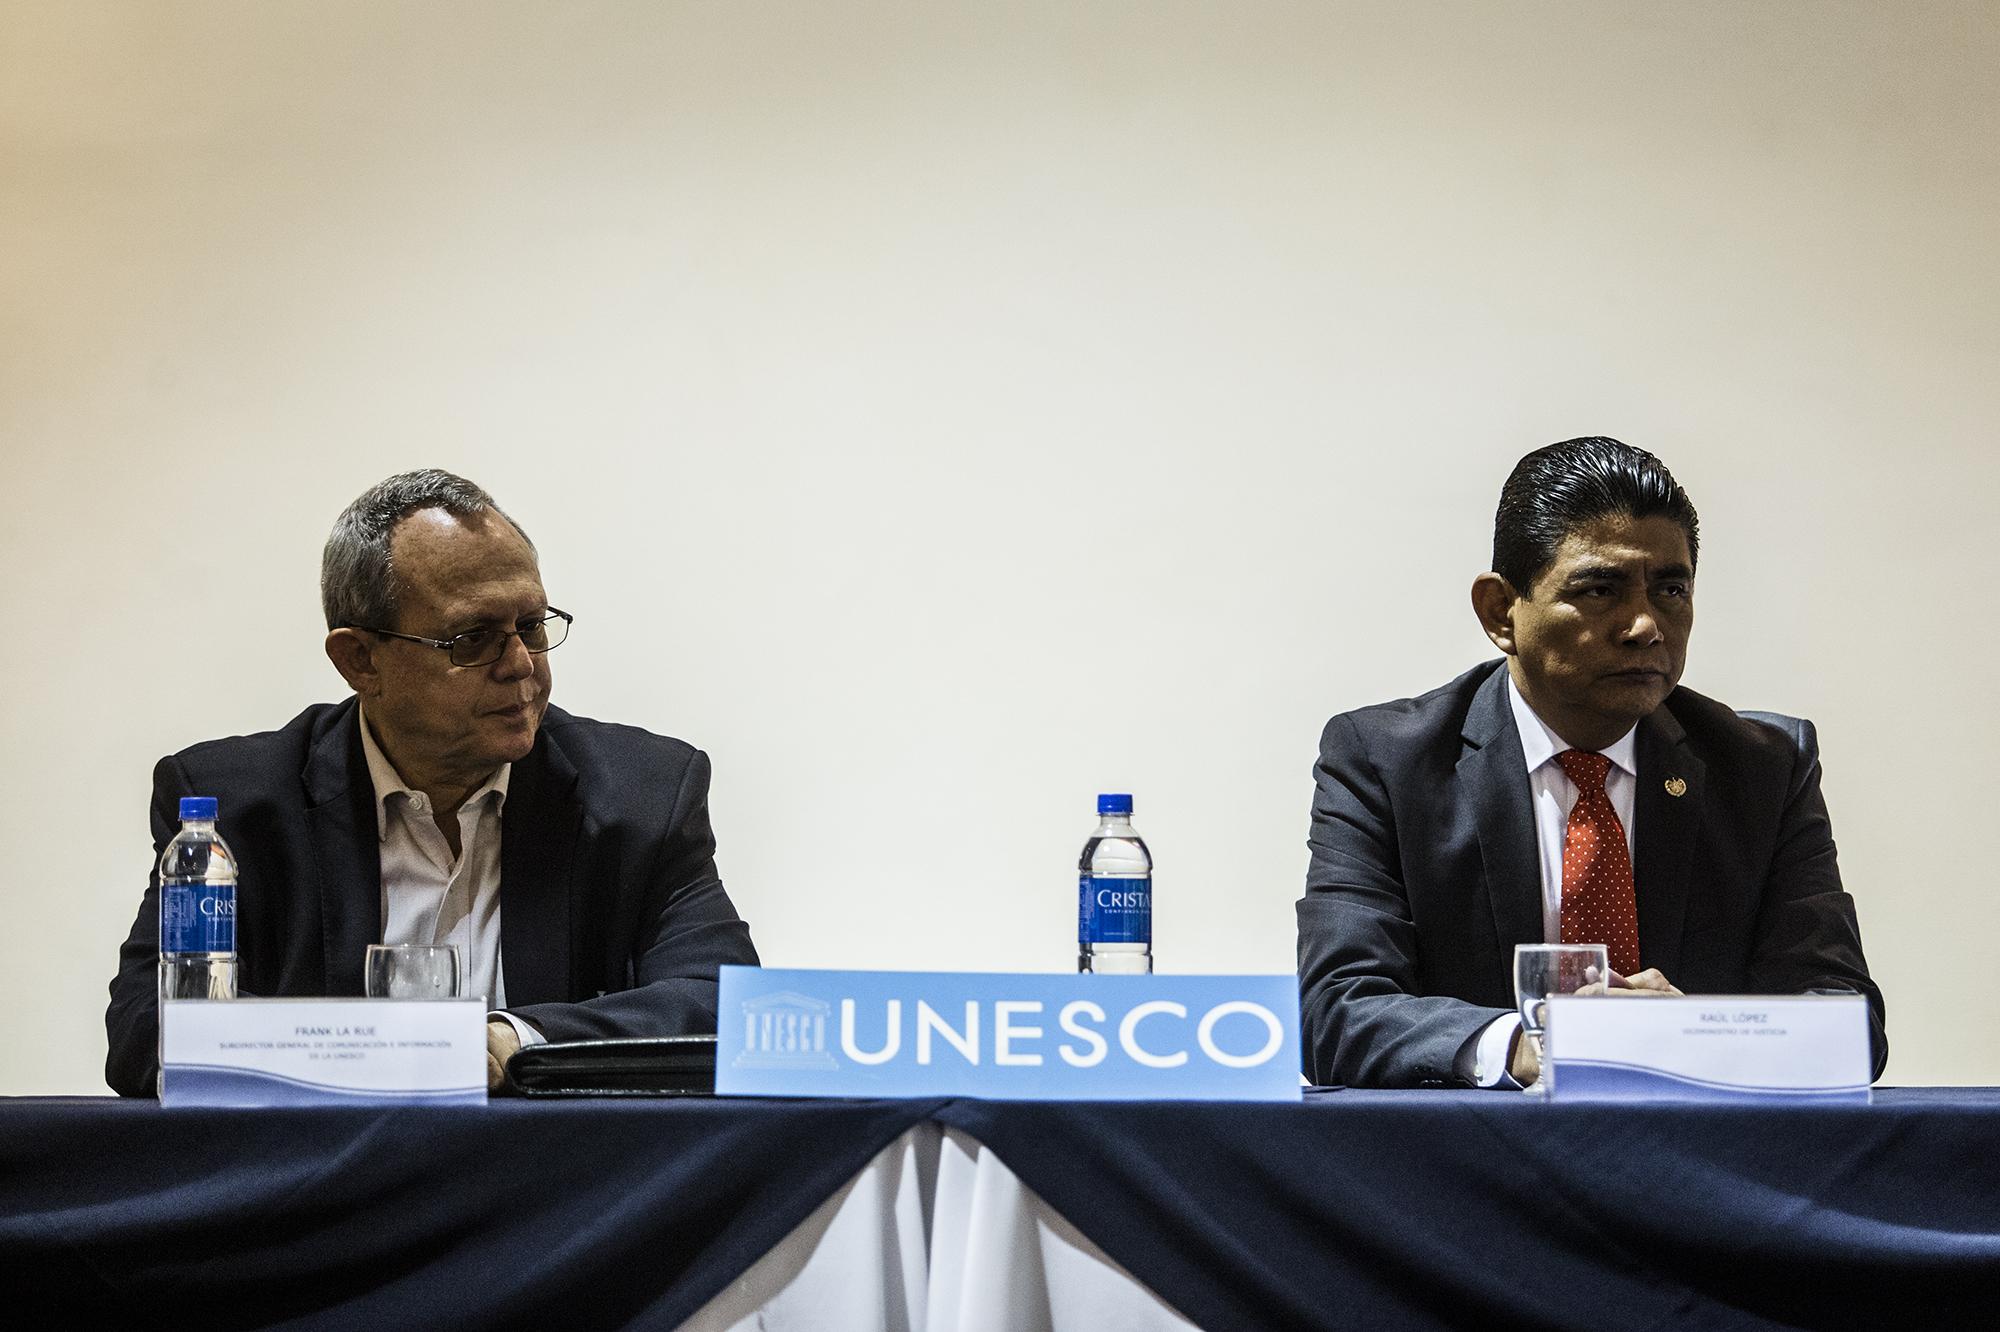 Frank LA Rue (sub-director de Comunicación e Información UNESCO) y Raúl López (Vice Ministro de Justicia y Seguridad) durante una conferencia de prensa sobre seguridad de periodistas y lucha contra la impunidad el 31 de agosto de 2017. 